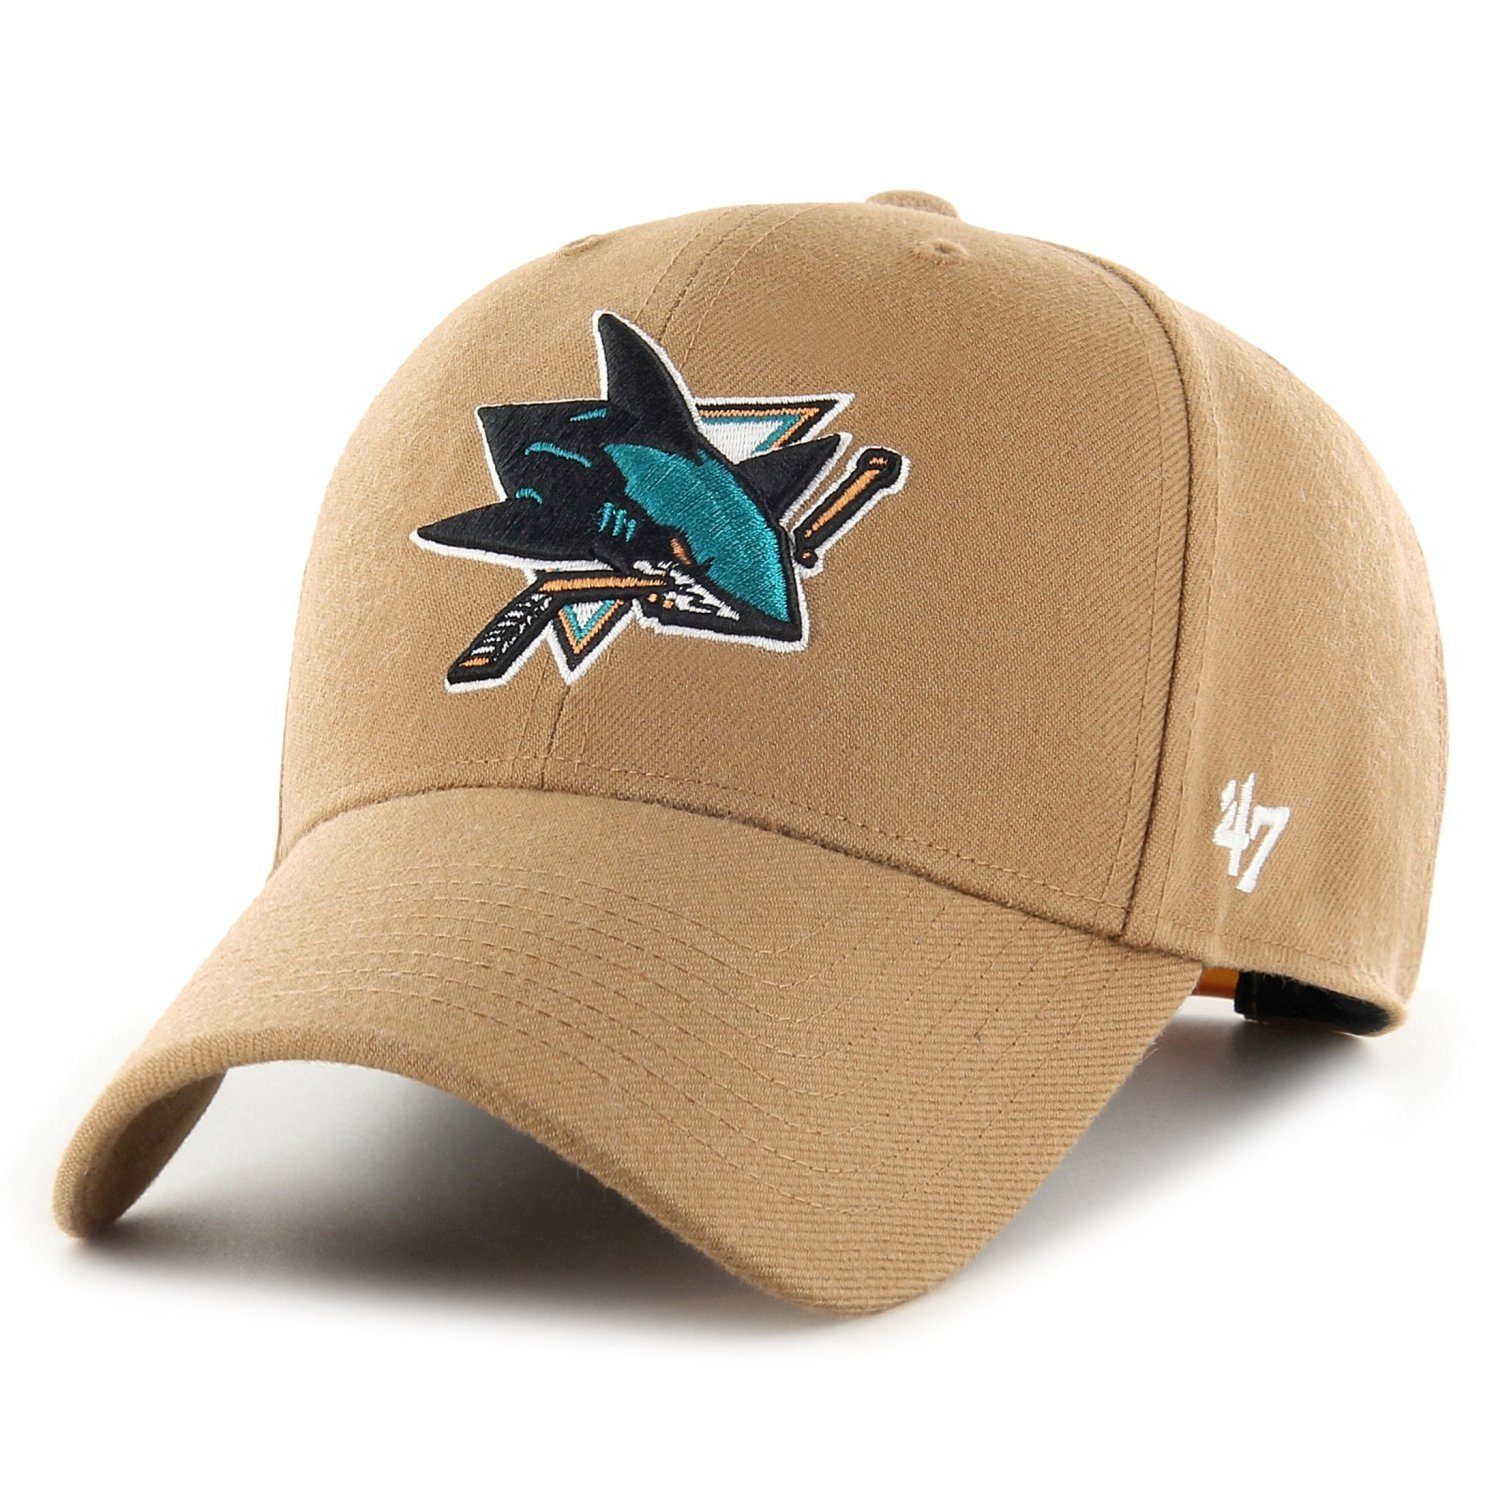 NHL Brand Jose Snapback Cap Sharks '47 San